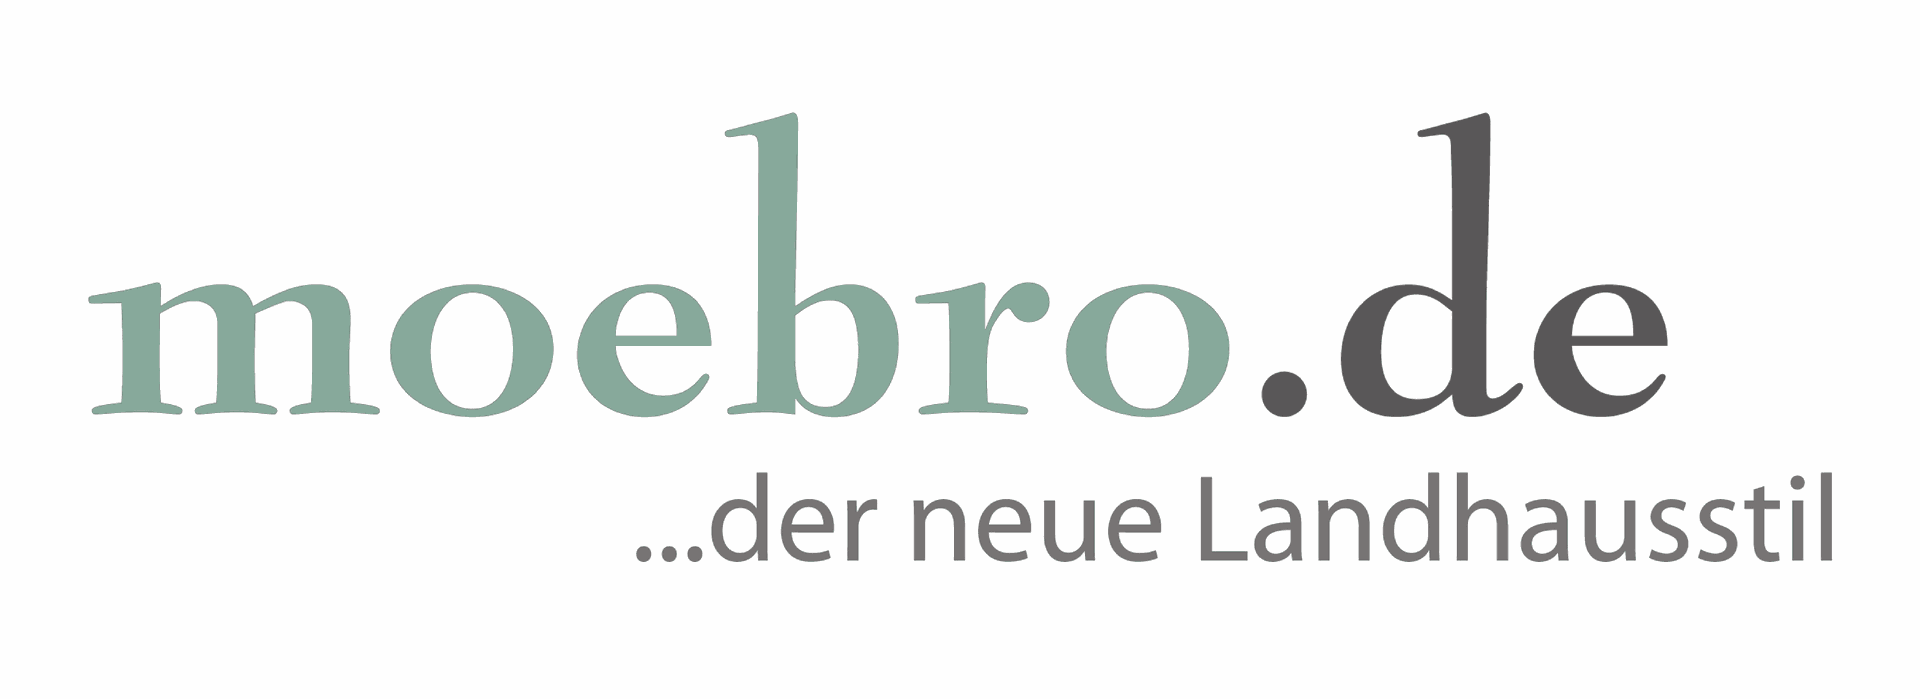 moebro.de - Logo